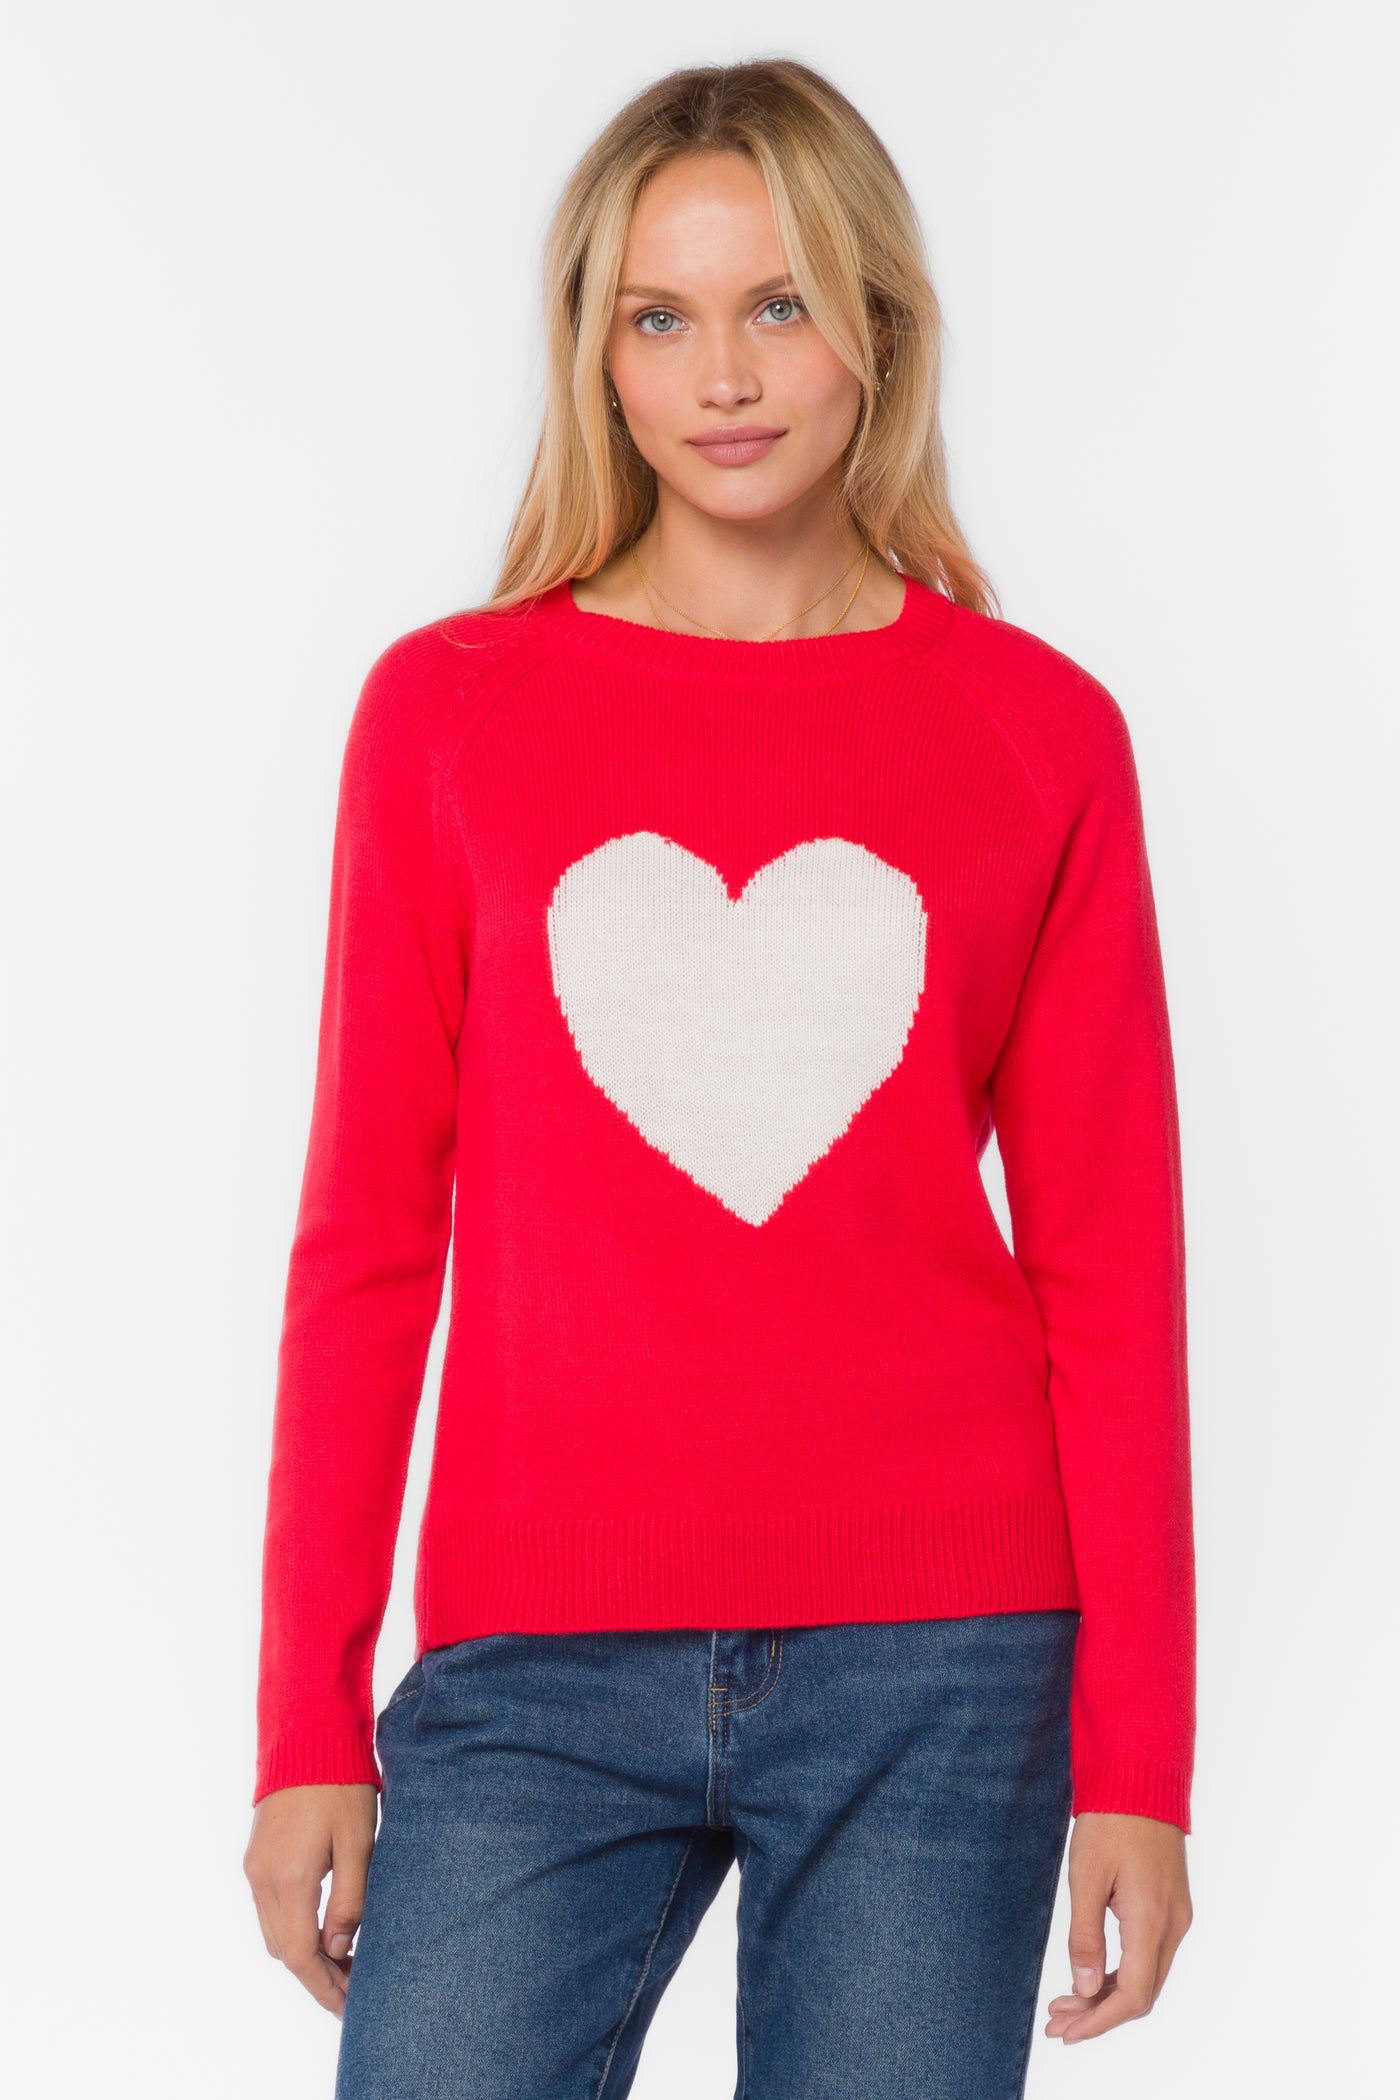 Nena Red Heart Sweater - Sweaters - Velvet Heart Clothing